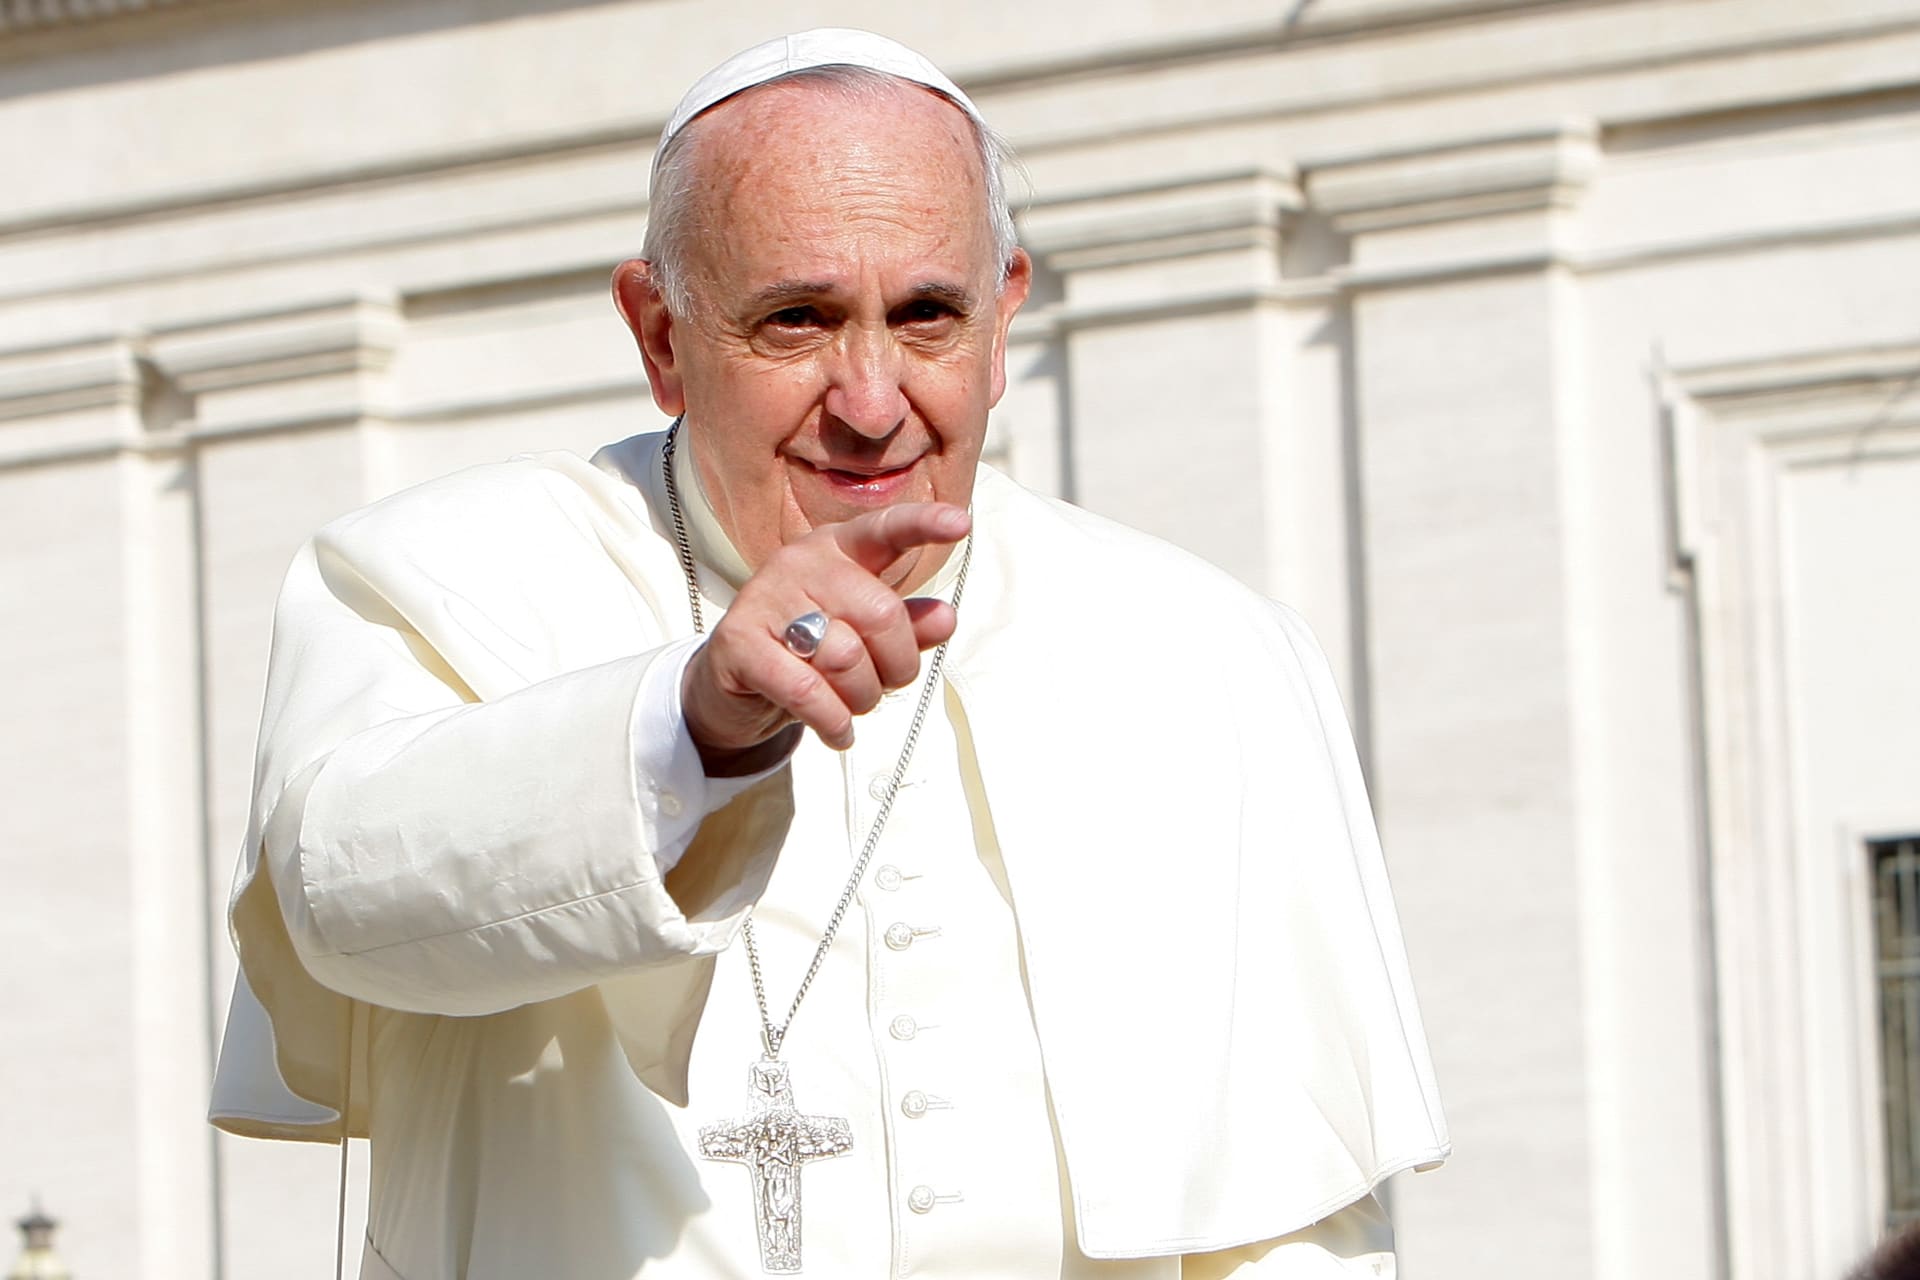 البابا فرانسيس يصف تعليم الهويّة الجنسية في المدارس بـ"الاحتلال الأيديولوجي"